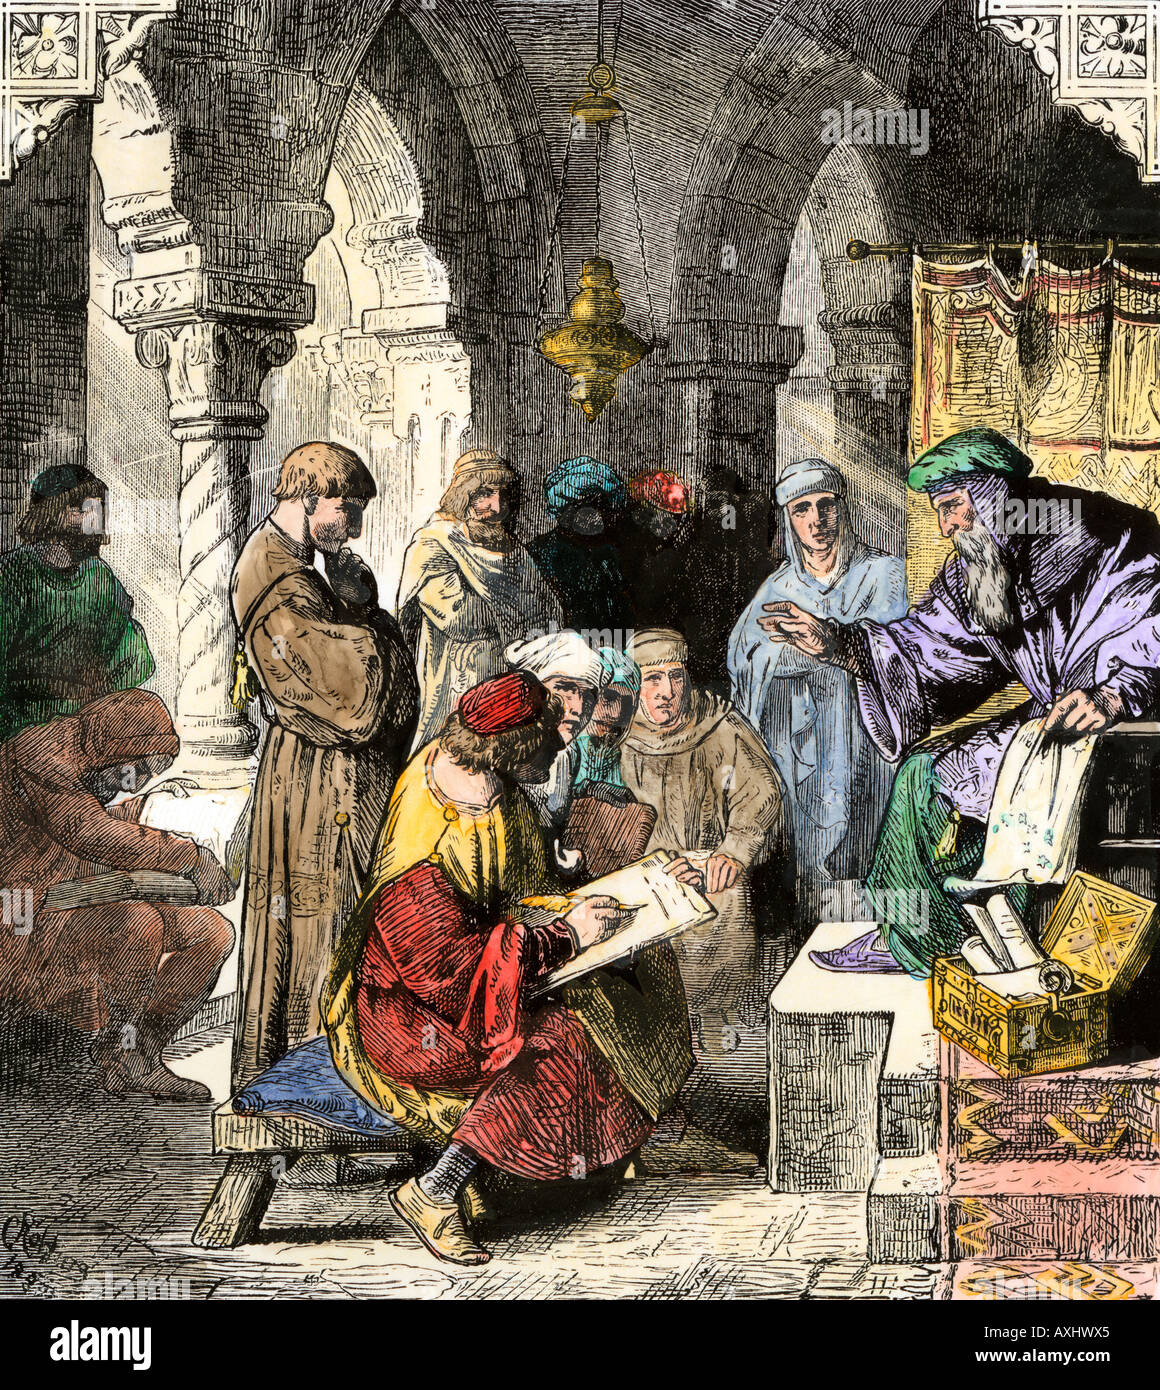 L'alchimie et l'astrologie et les mathématiques et la science enseignée par des intellectuels arabes dans les écoles médiévales. À la main, gravure sur bois Banque D'Images